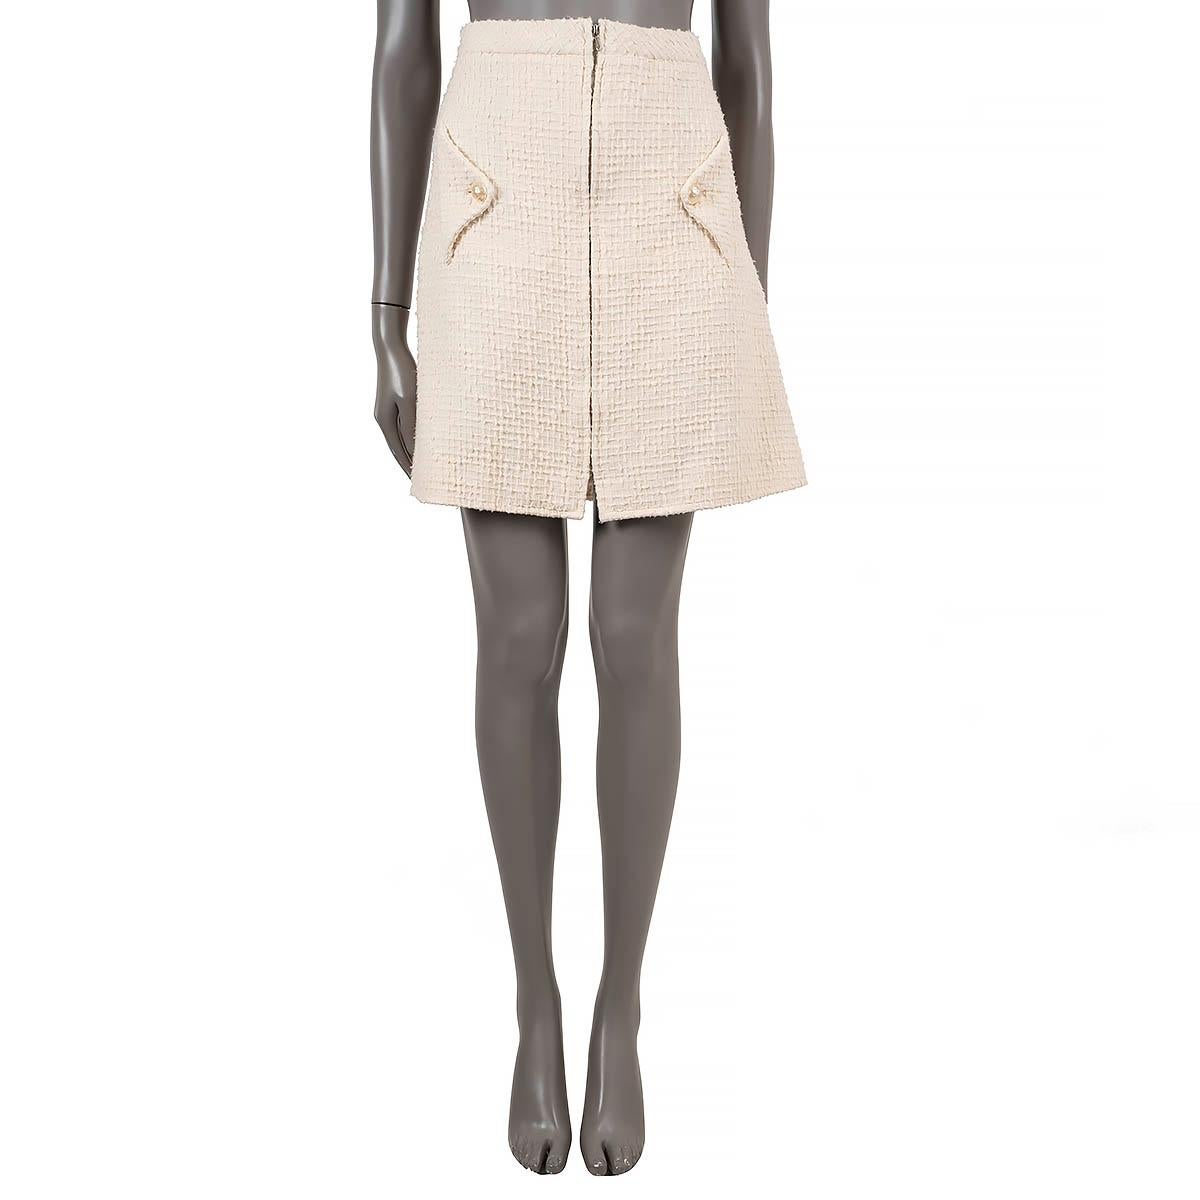 100% authentischer Chanel-Rock aus strukturiertem Tweed in cremefarbener Baumwolle (100%). Mit ausgestellter, knielanger Silhouette und zwei Pattentaschen mit Kunstperlenknöpfen an der Taille. Öffnet sich mit einem verdeckten Reißverschluss auf der